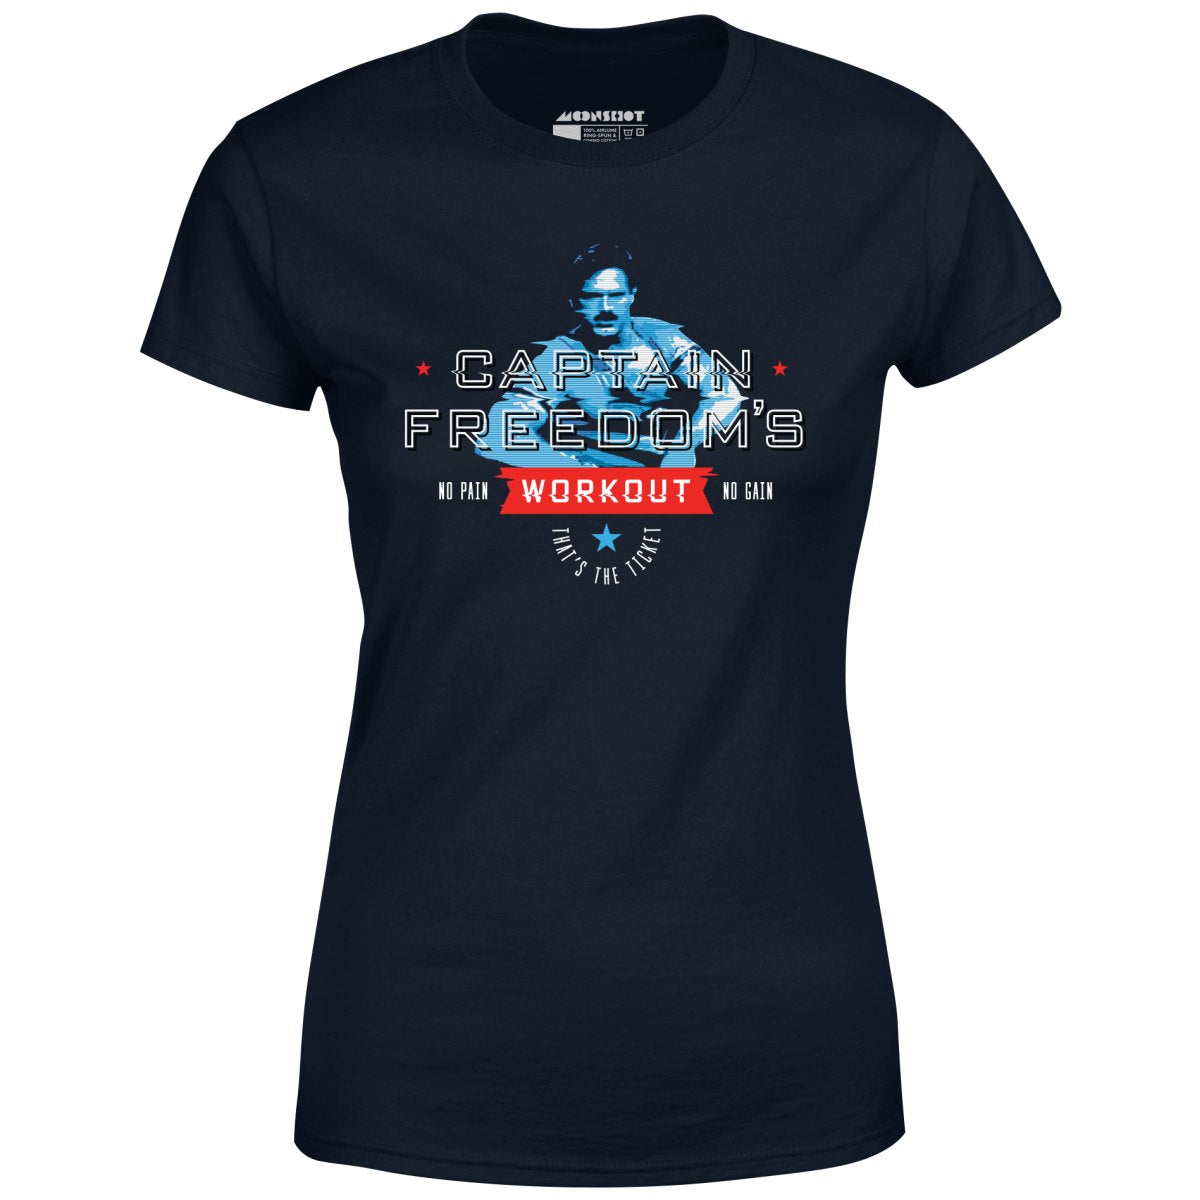 Running Man - Captain Freedom's Workout - Women's T-Shirt